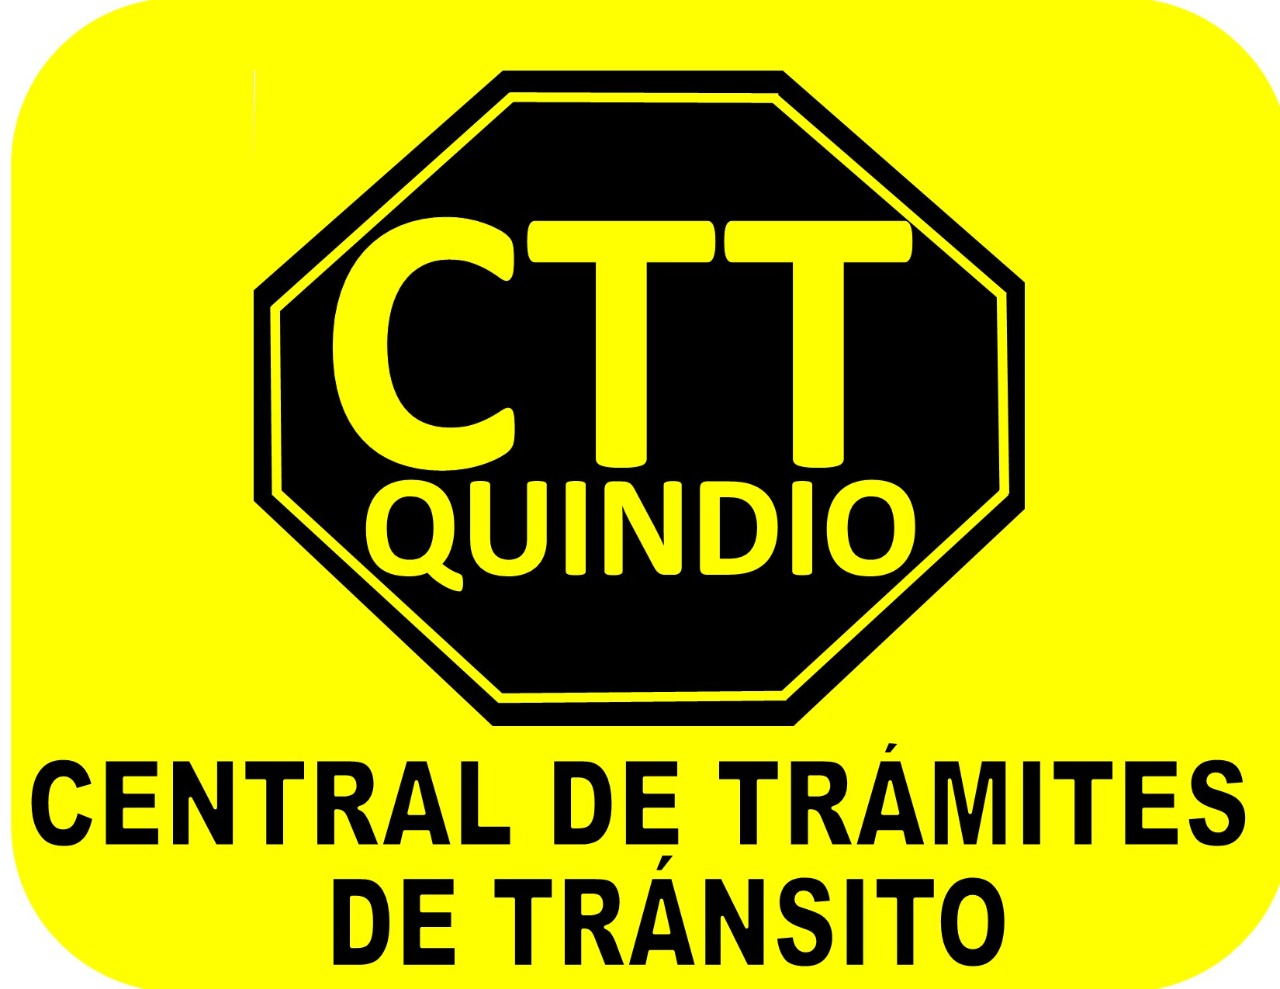 CENTRAL DE TRÁMITES